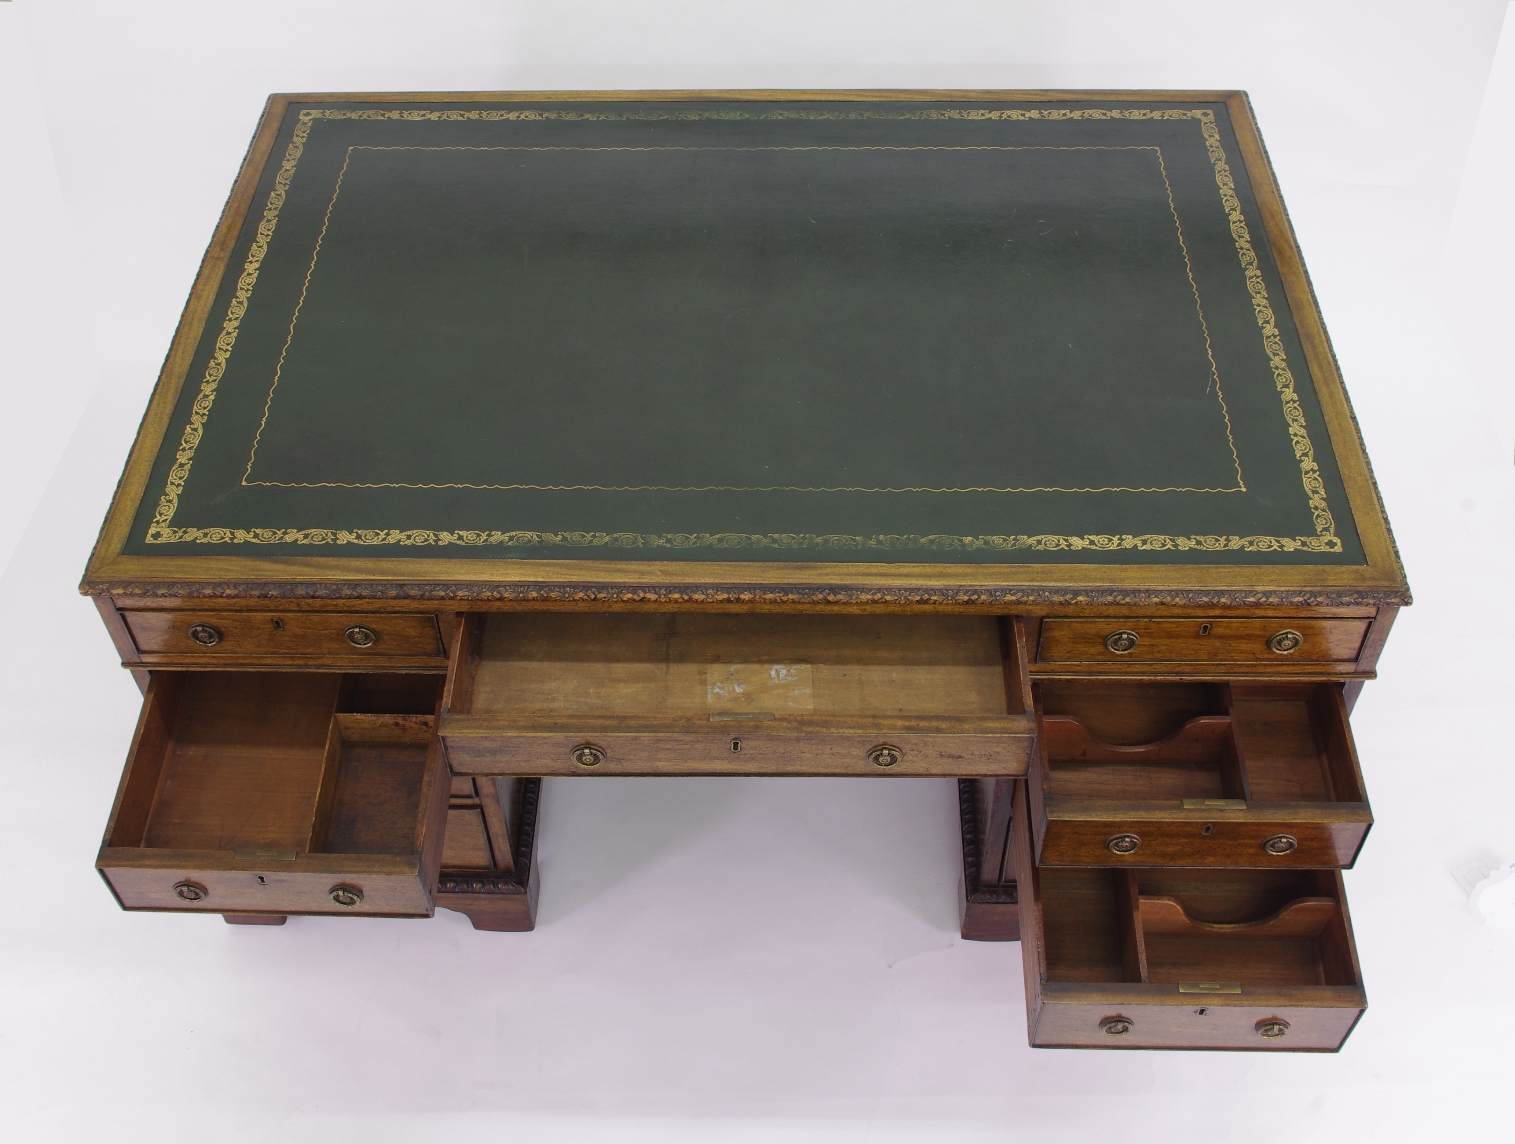 Victorian Mahogany Partners Desk, c. 1840-60